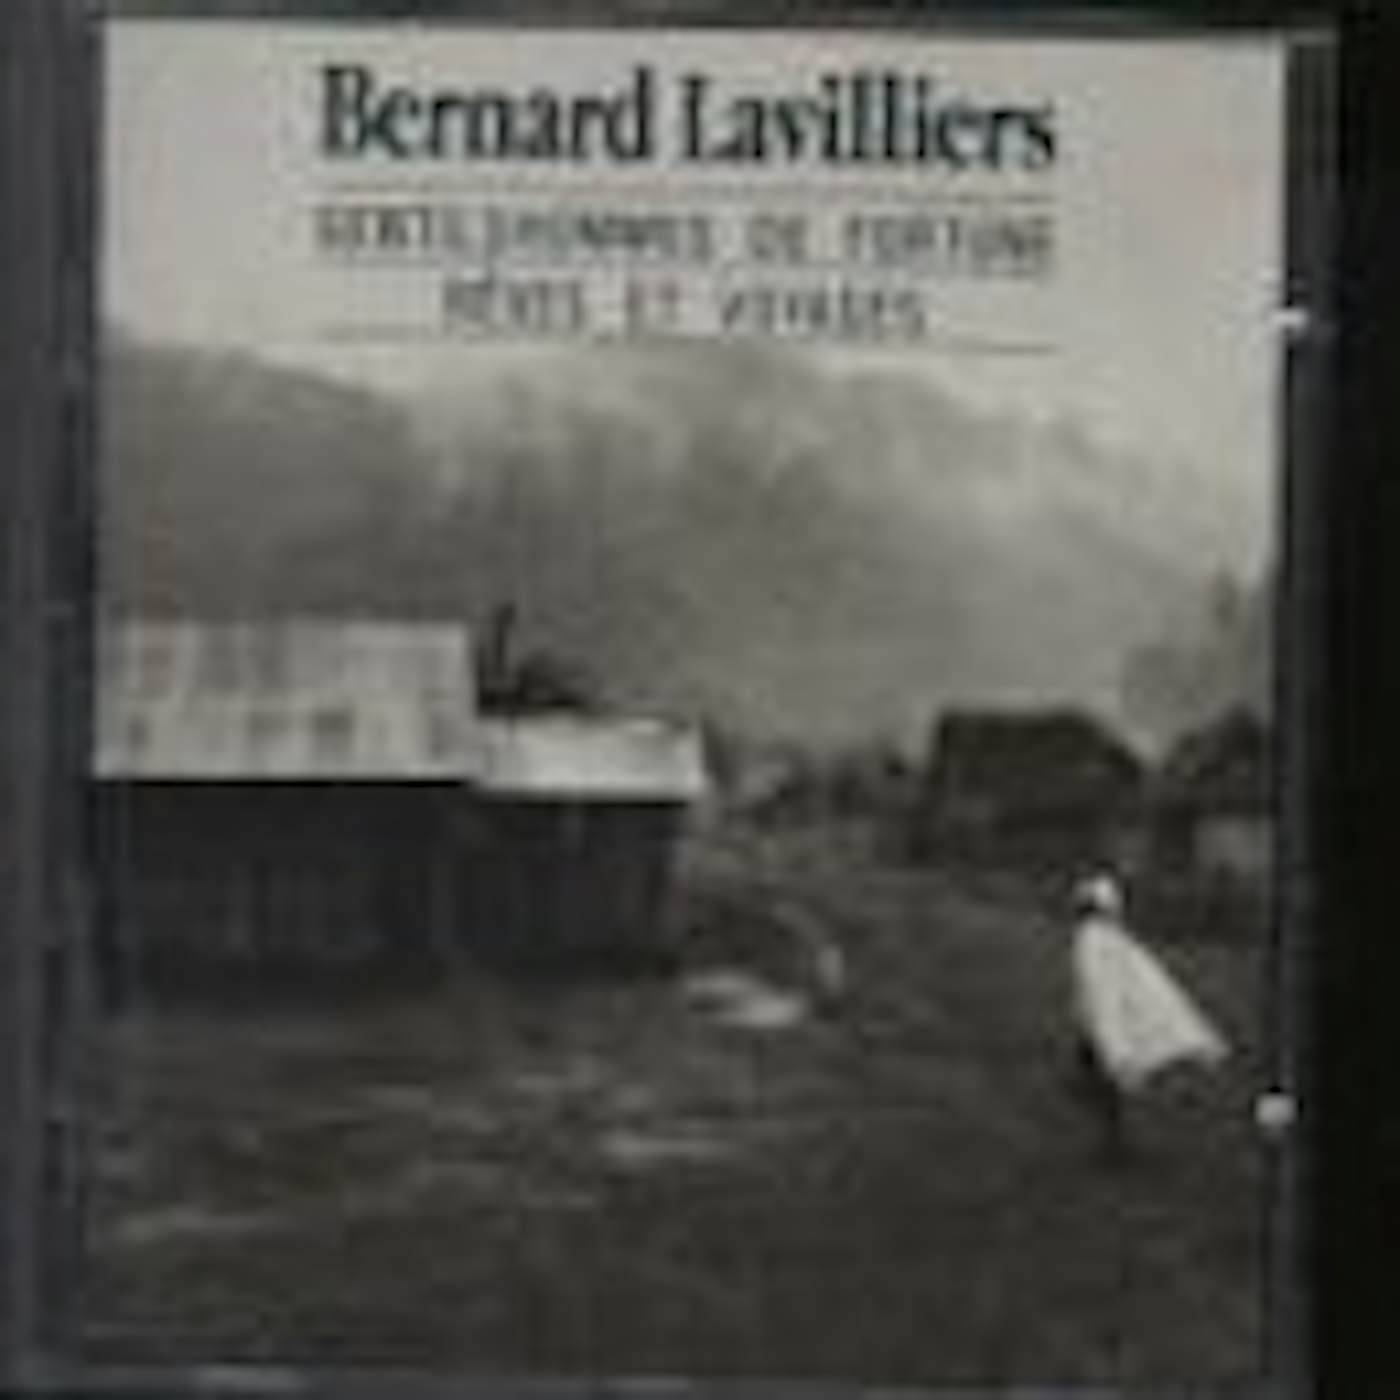 Bernard Lavilliers GENTILSHOMMES DE FORTUNE REVES ET VOYAGES CD